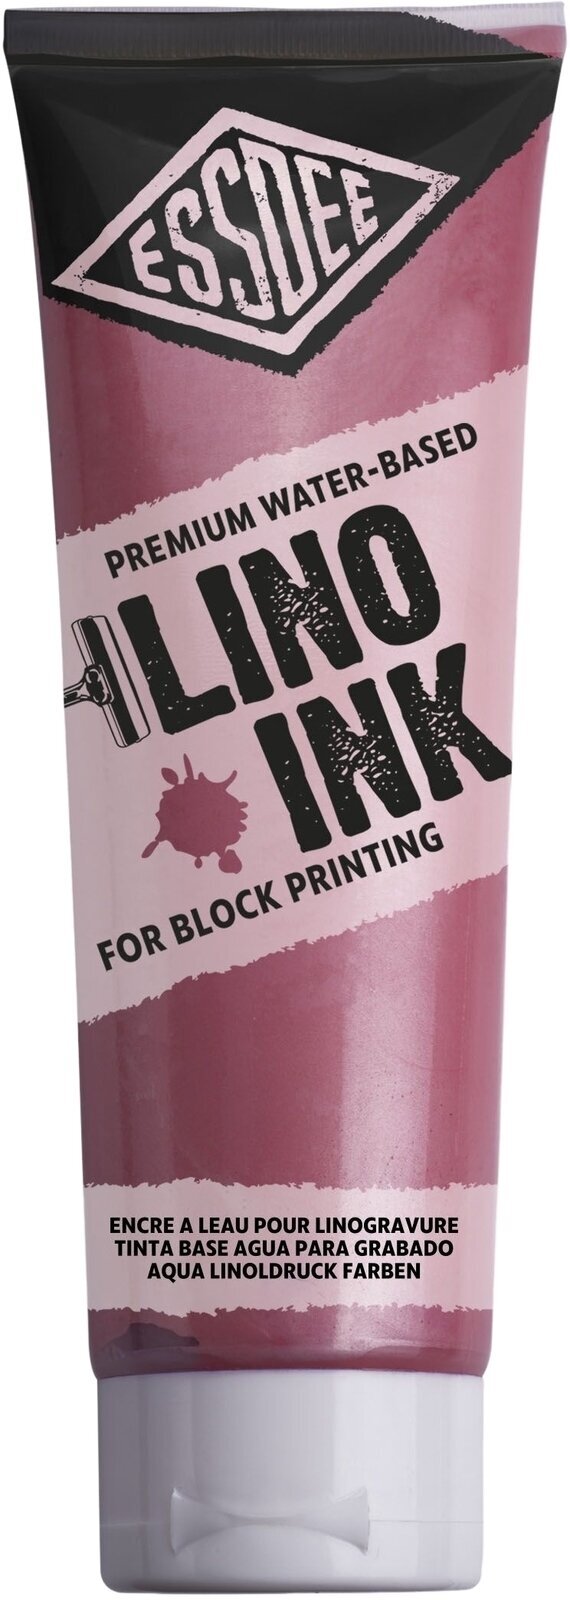 Verf voor linosnede Essdee Block Printing Ink Verf voor linosnede Pearlescent Pink 300 ml